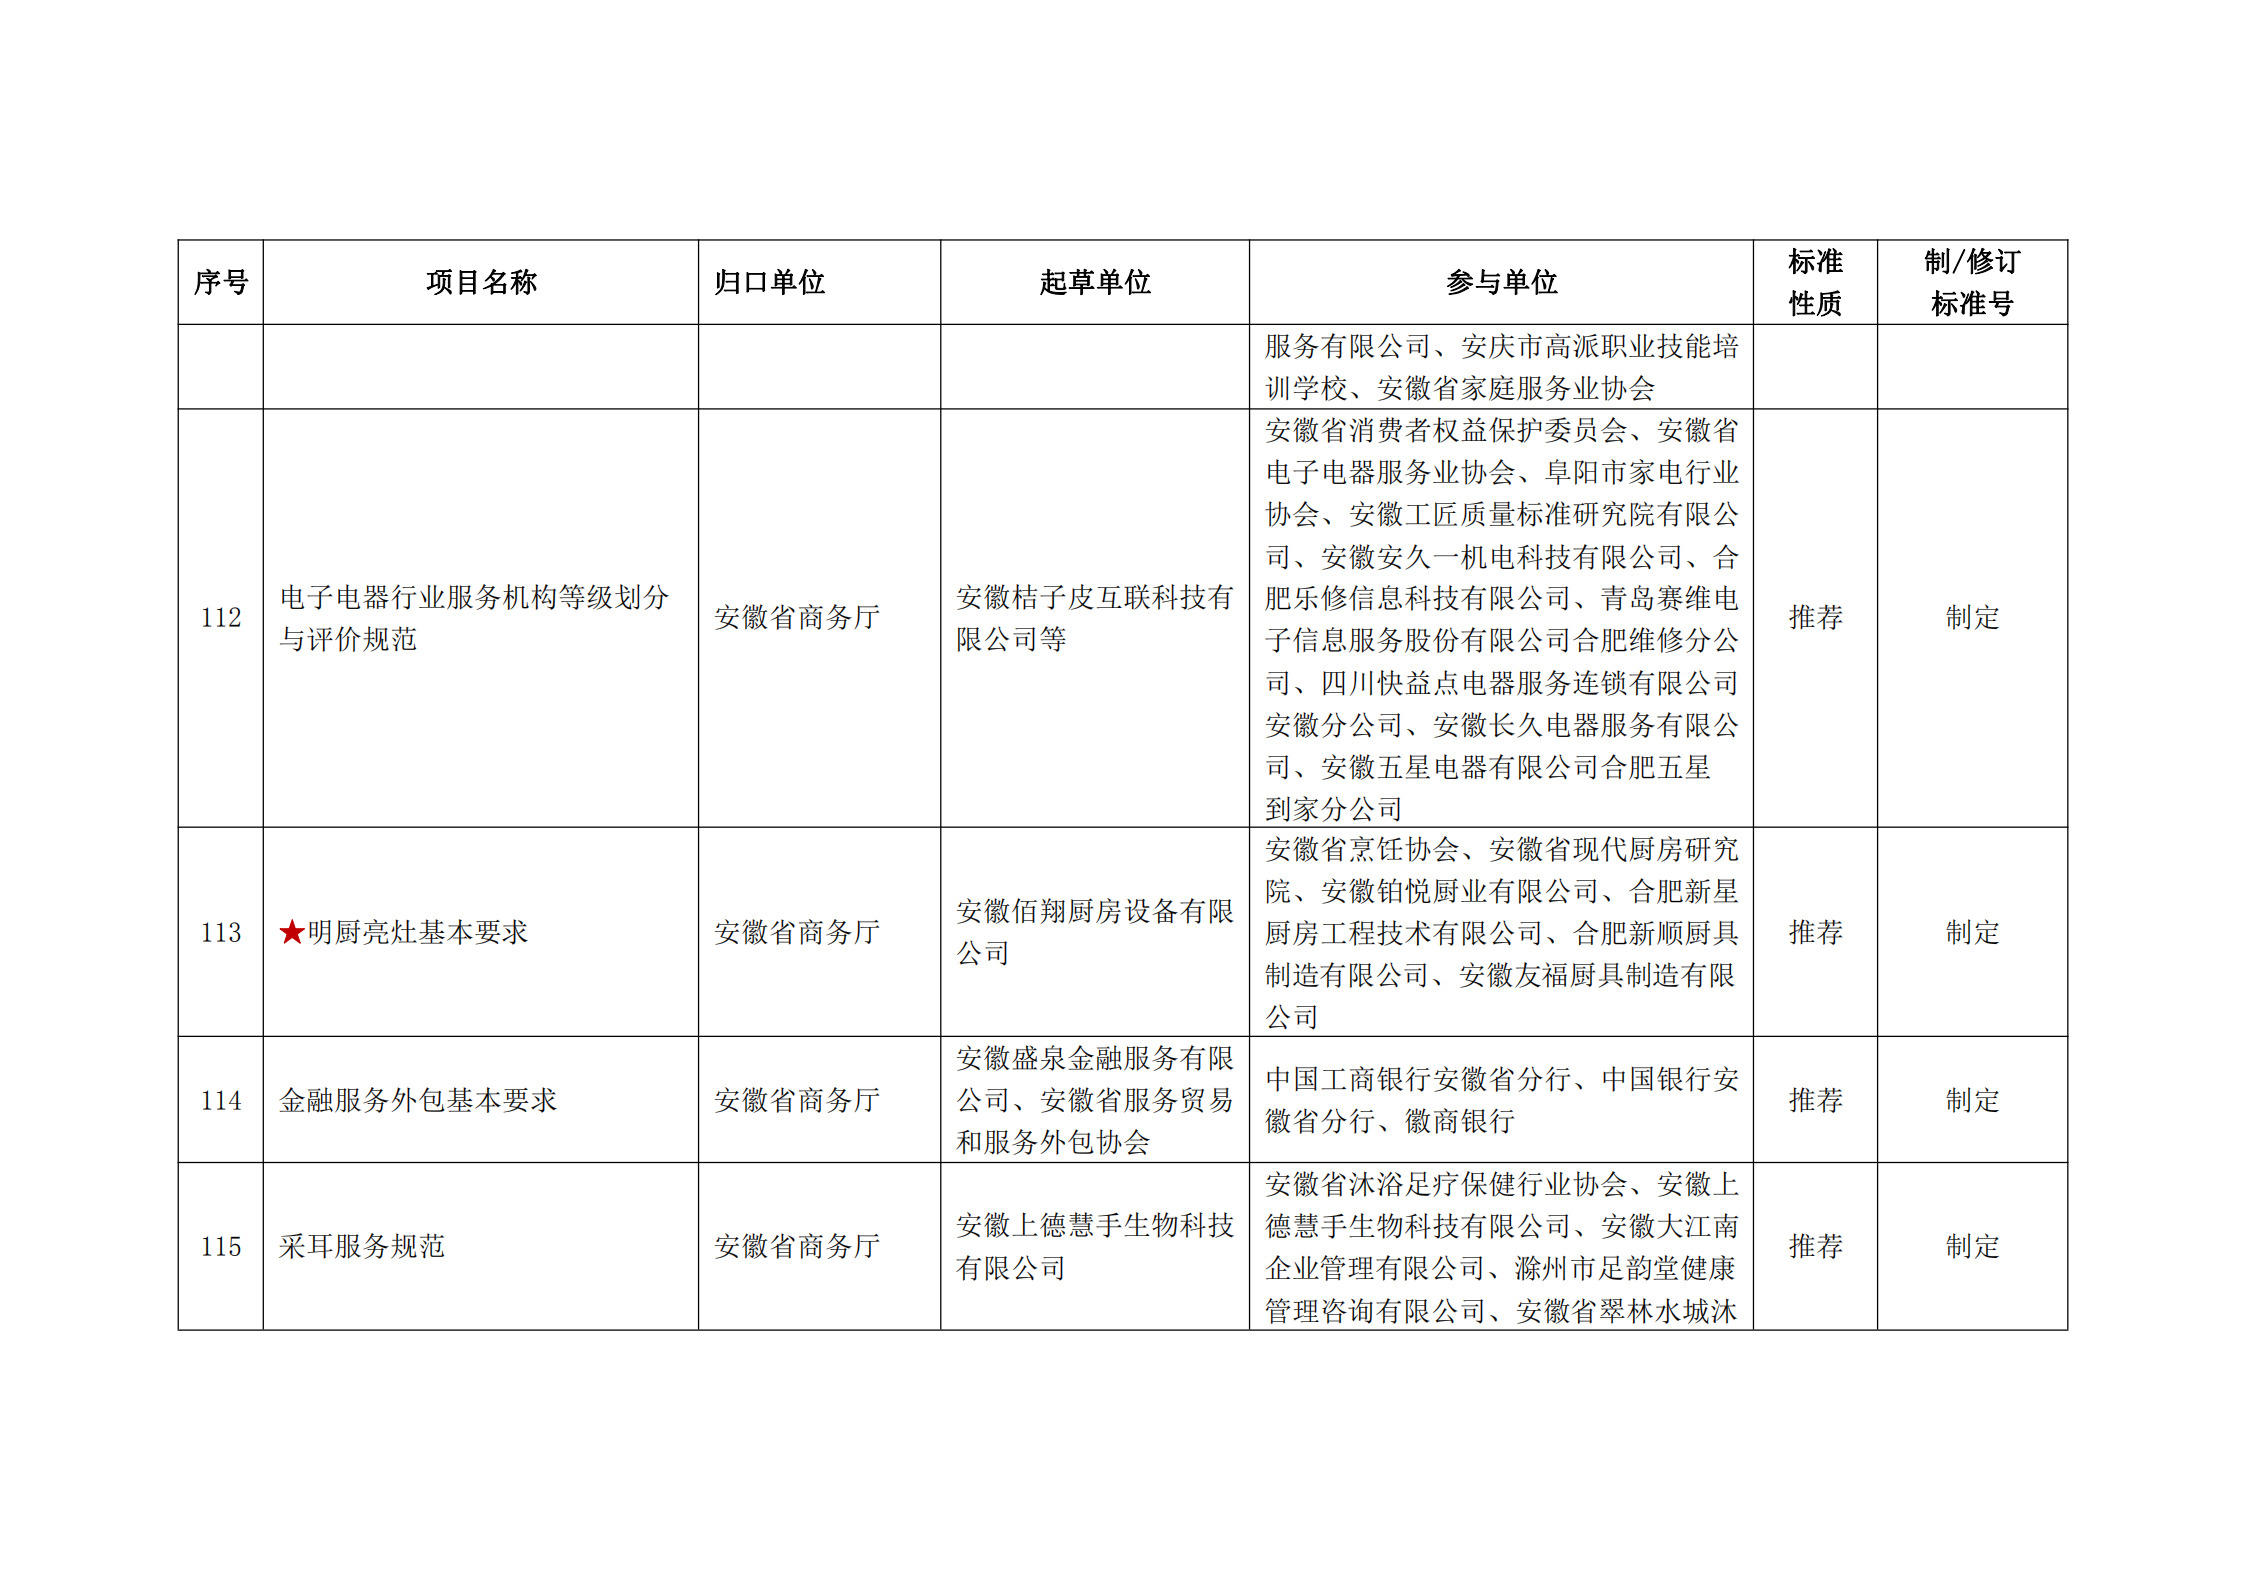 2020 年第二批安徽省地方标准制、修订计划项目汇总表(图13)